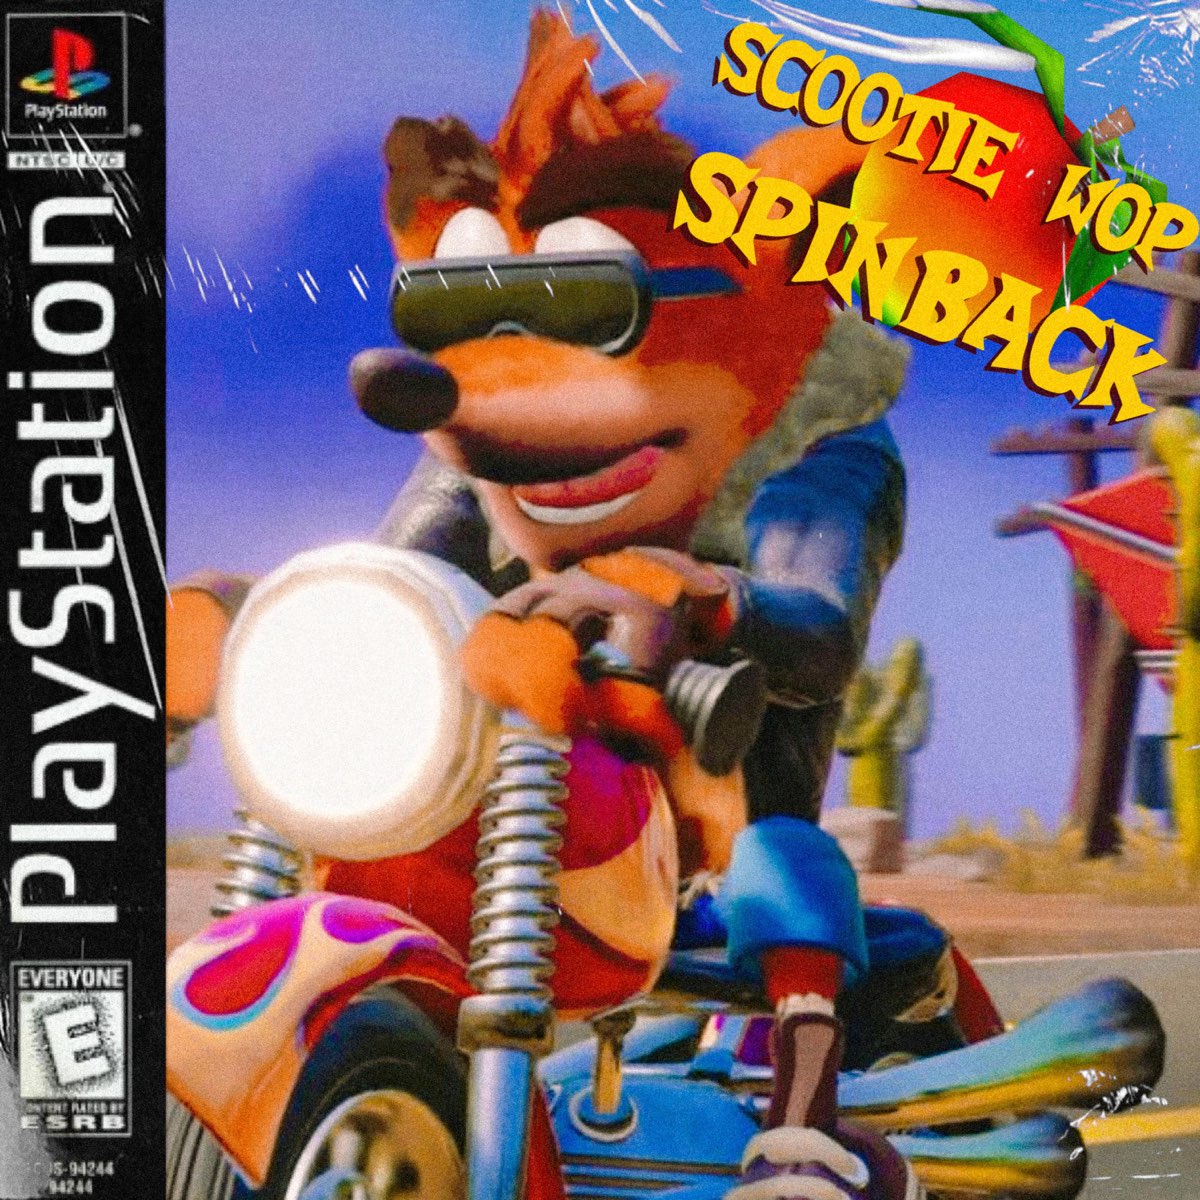 Back spin. Scootie Wop. Scootie.